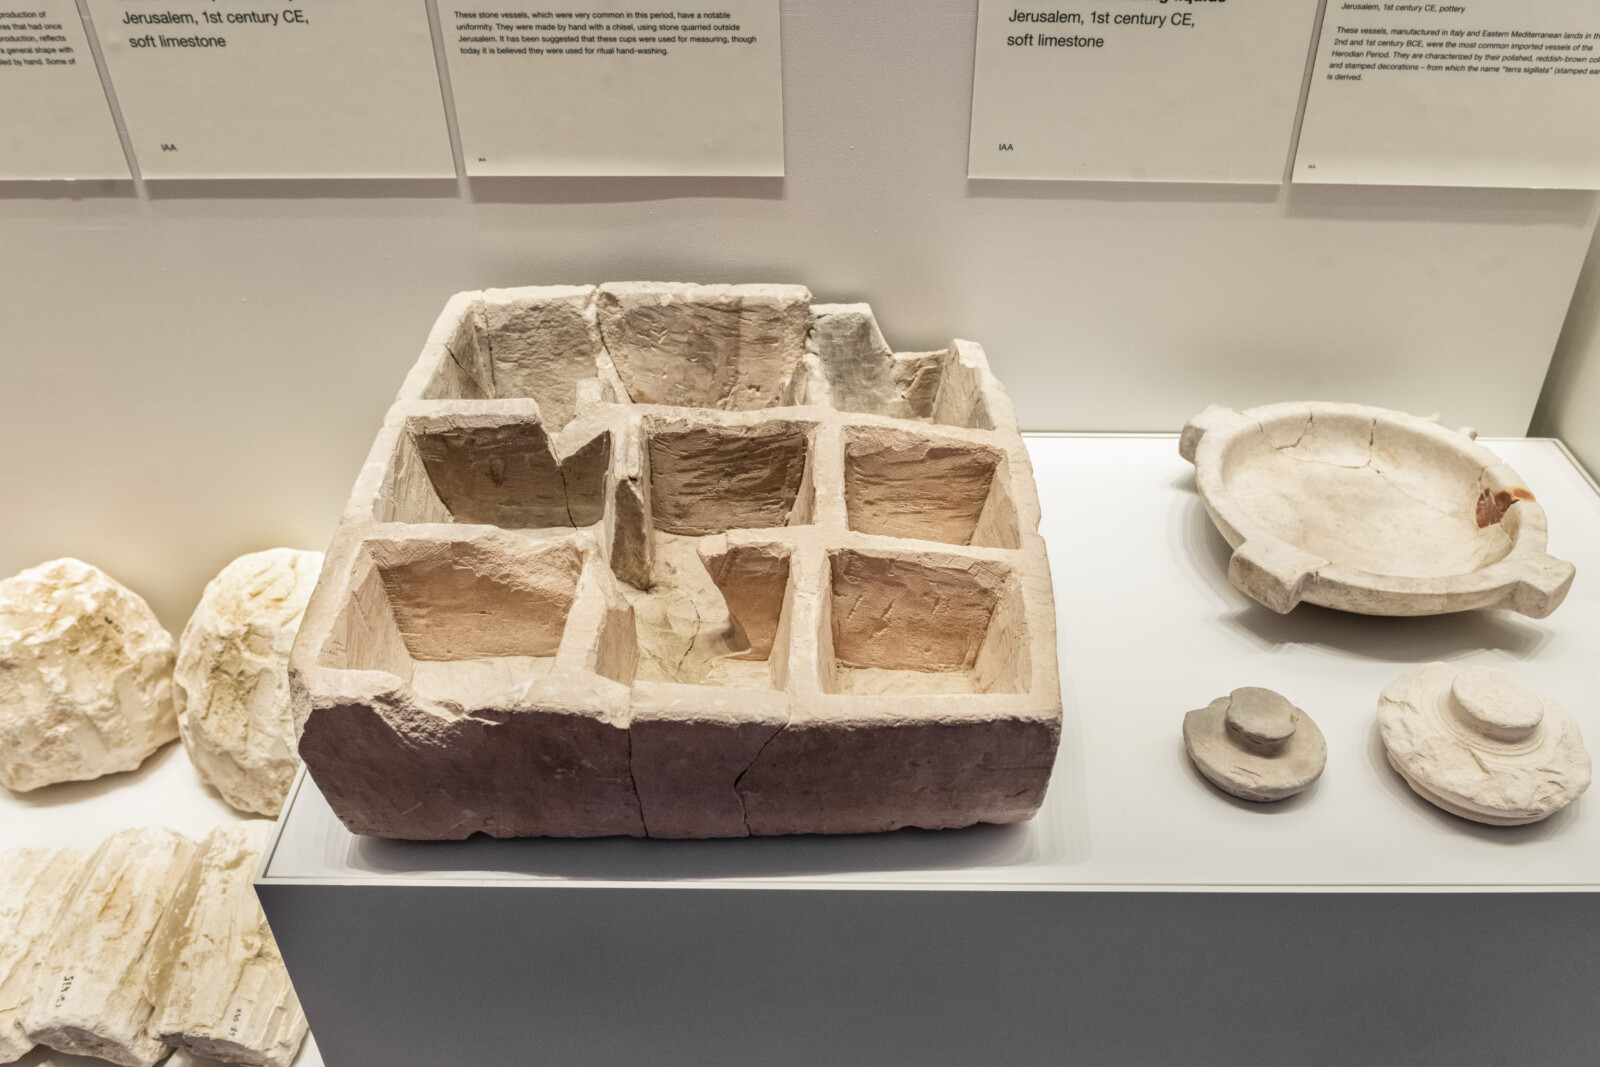 תיבת אבן מימי הבית השני התגלתה בעיר דוד ומוצגת לציבור לראשונה במוזיאון ישראל –...